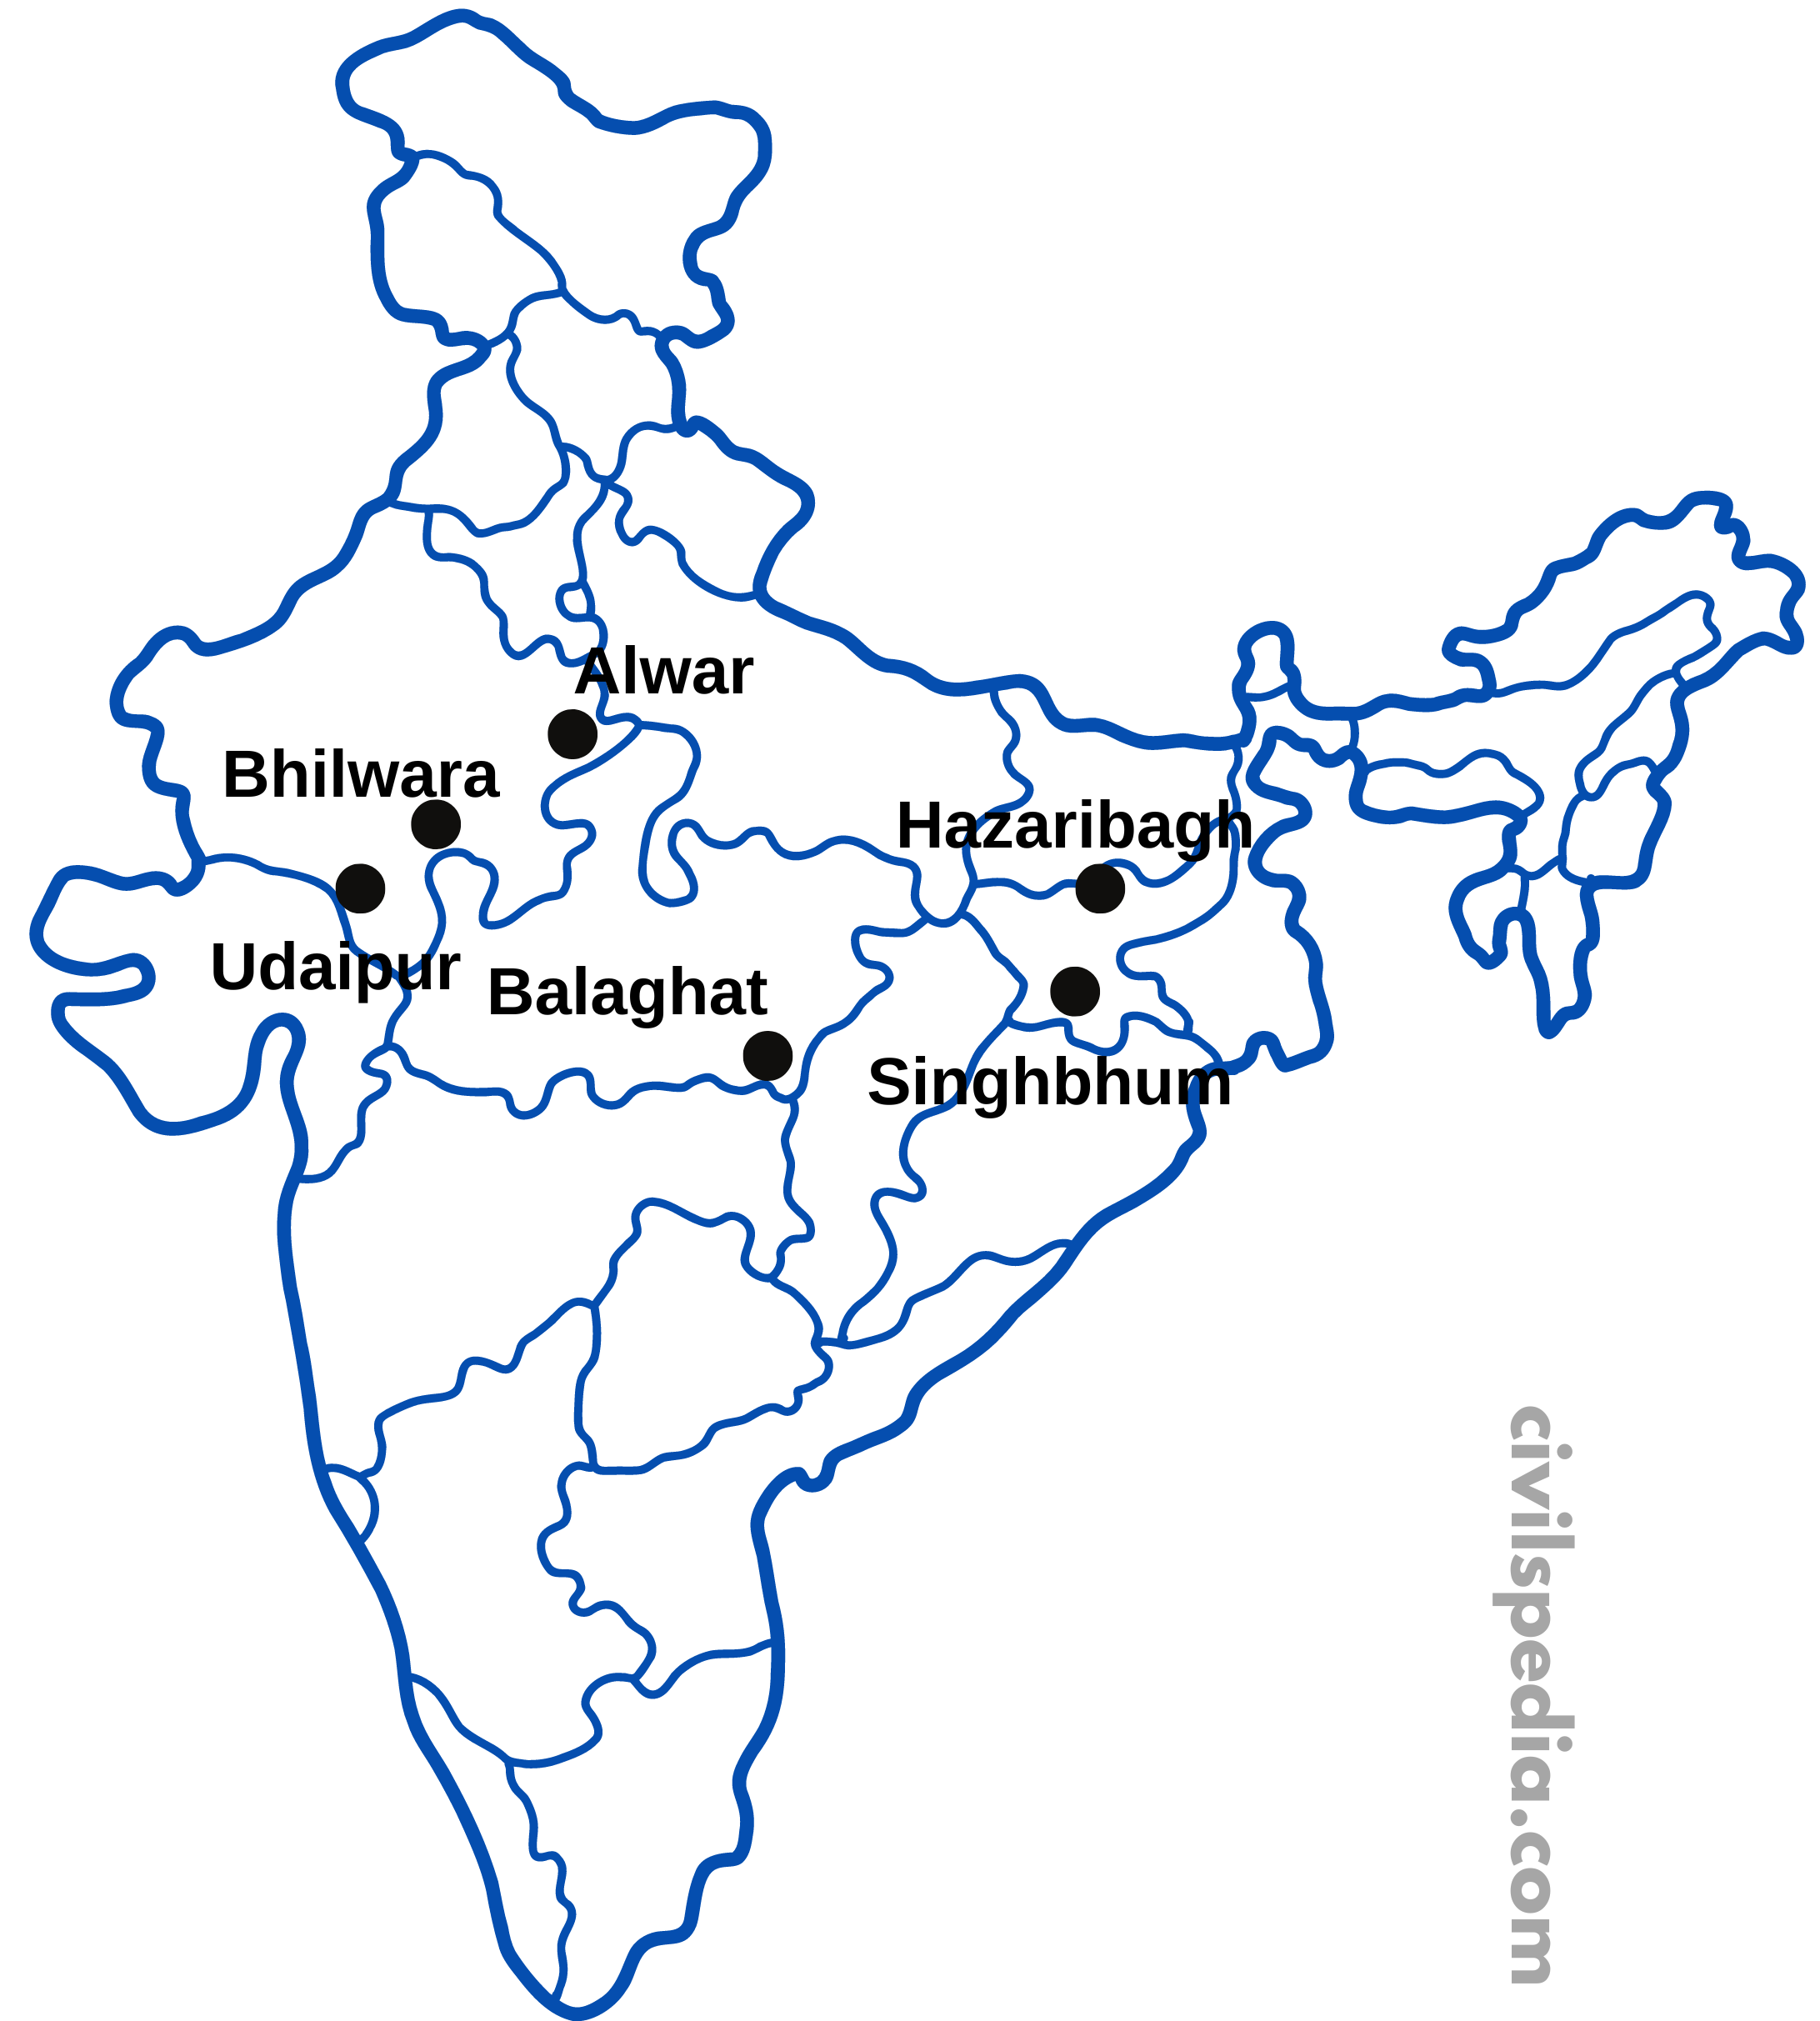 Copper ore distribution in India